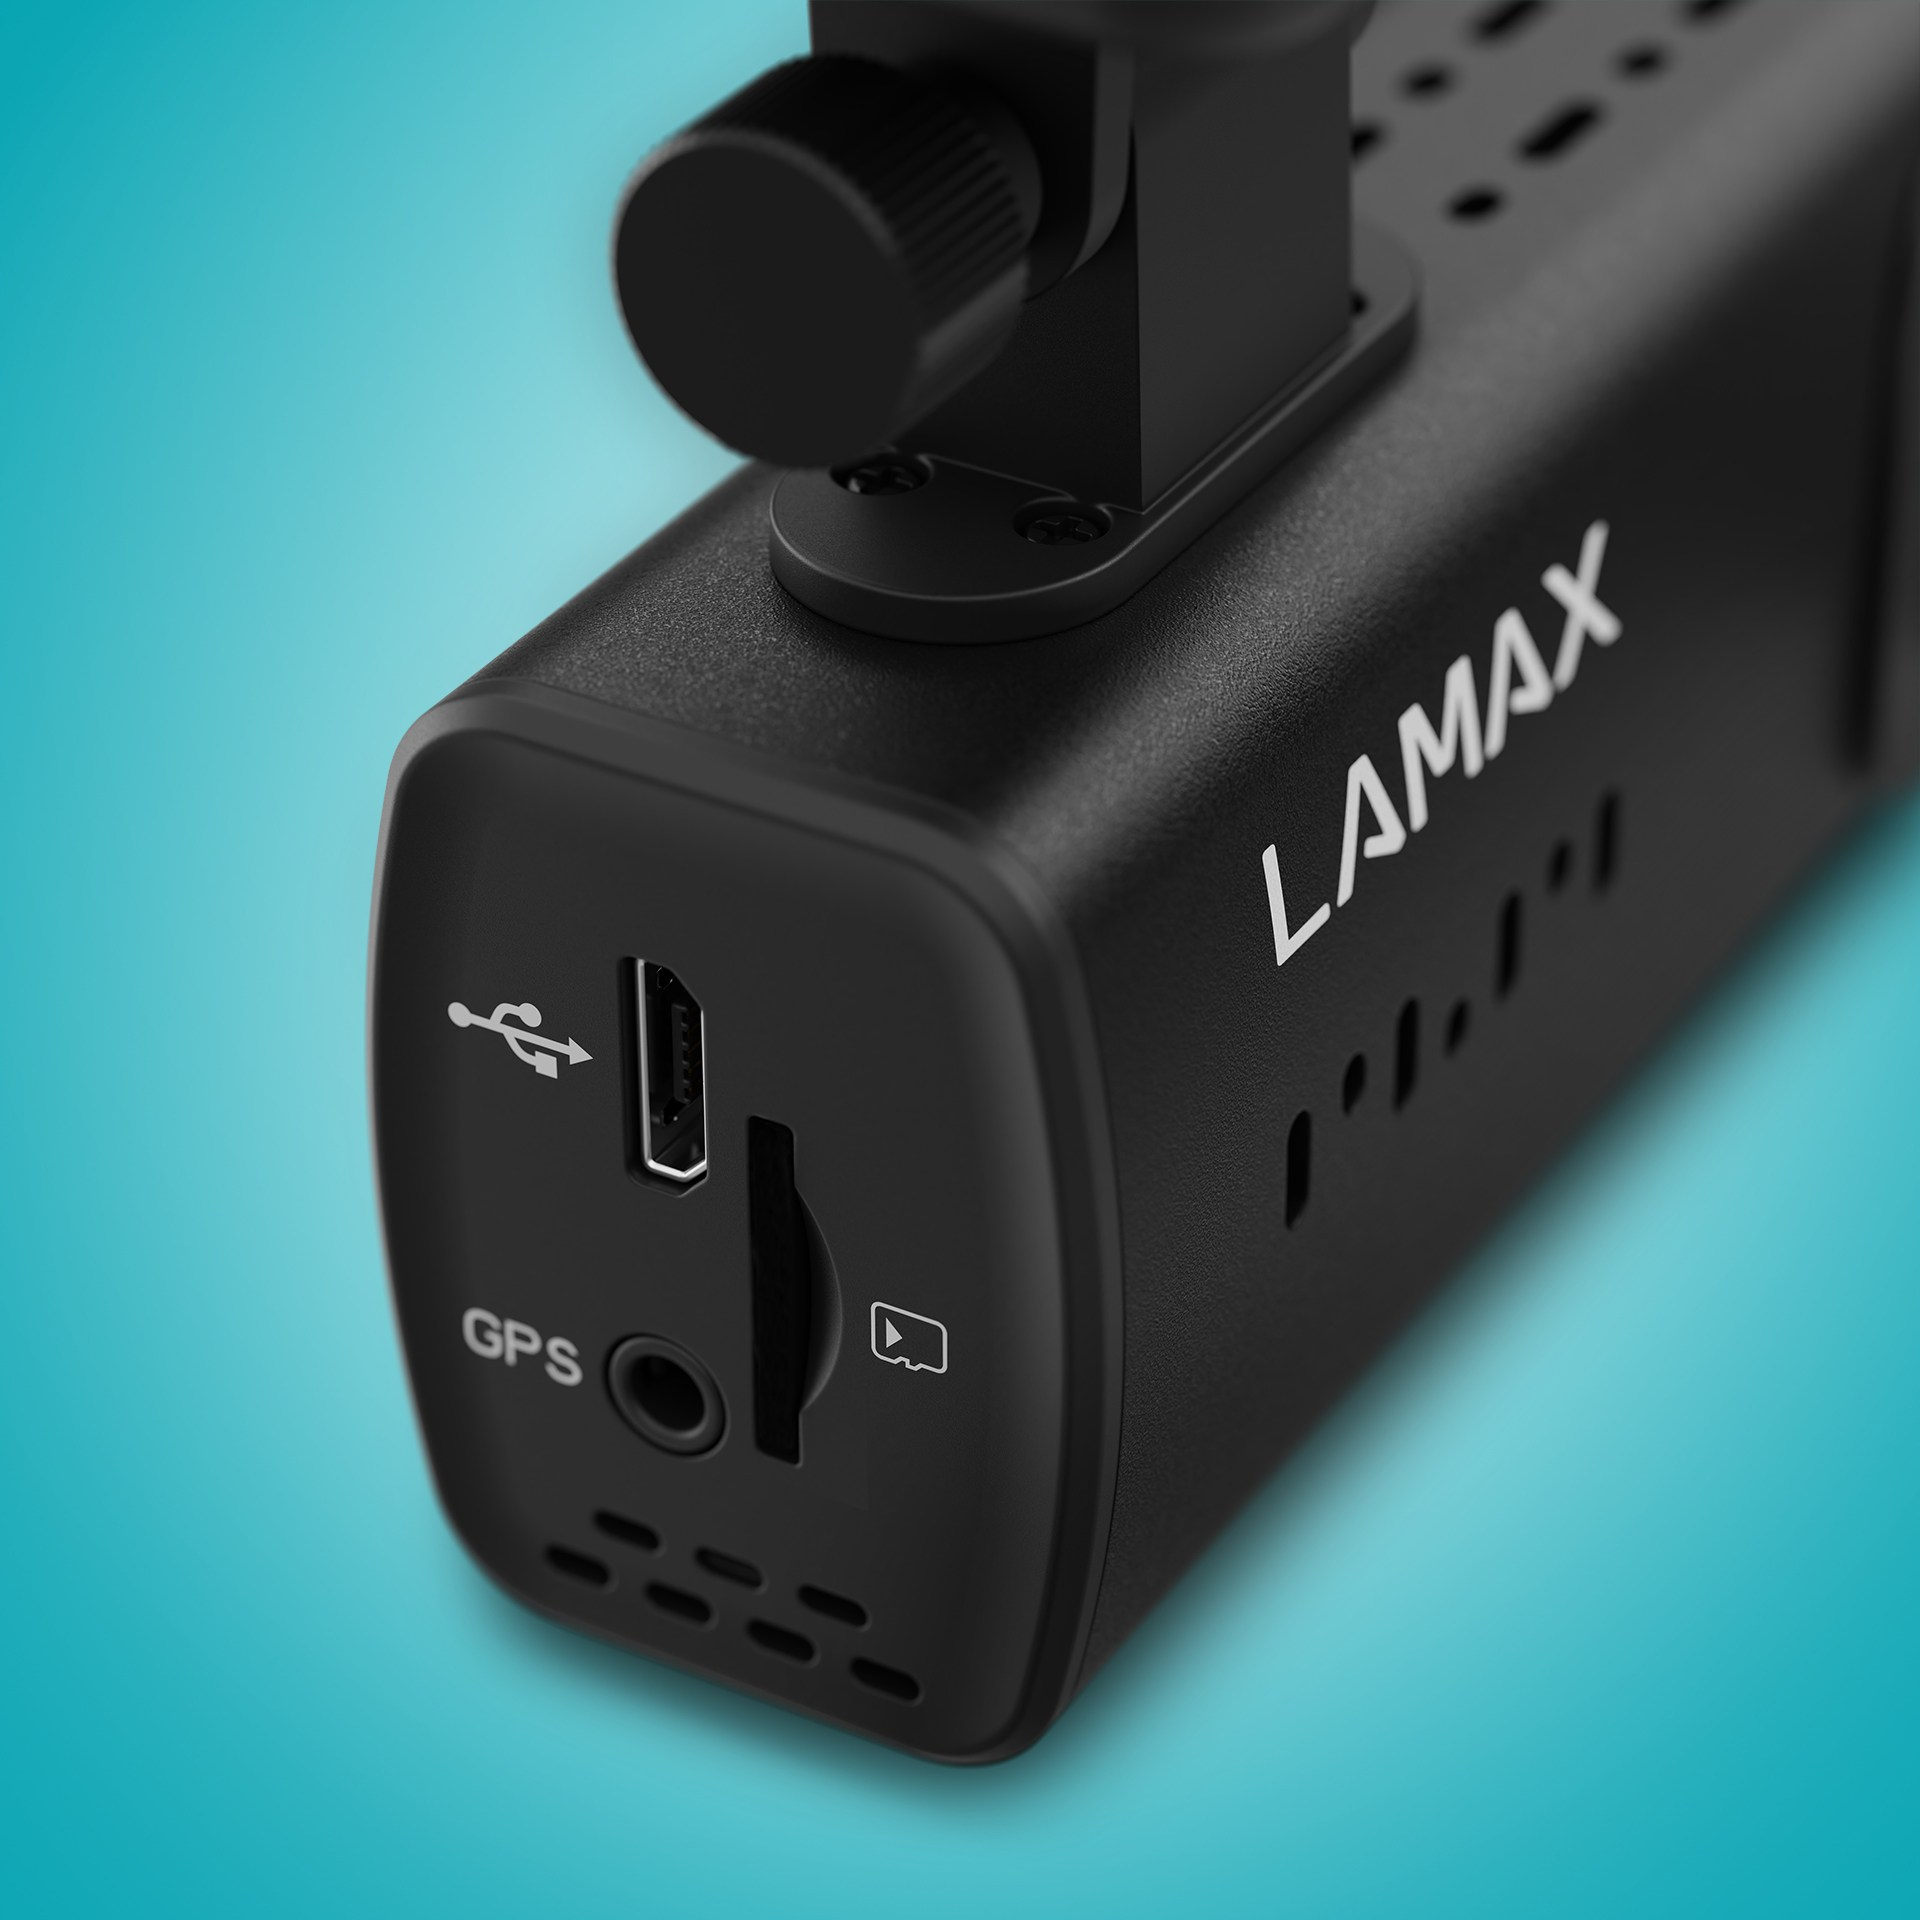 LAMAX LAMAX N4 Display Dashcam